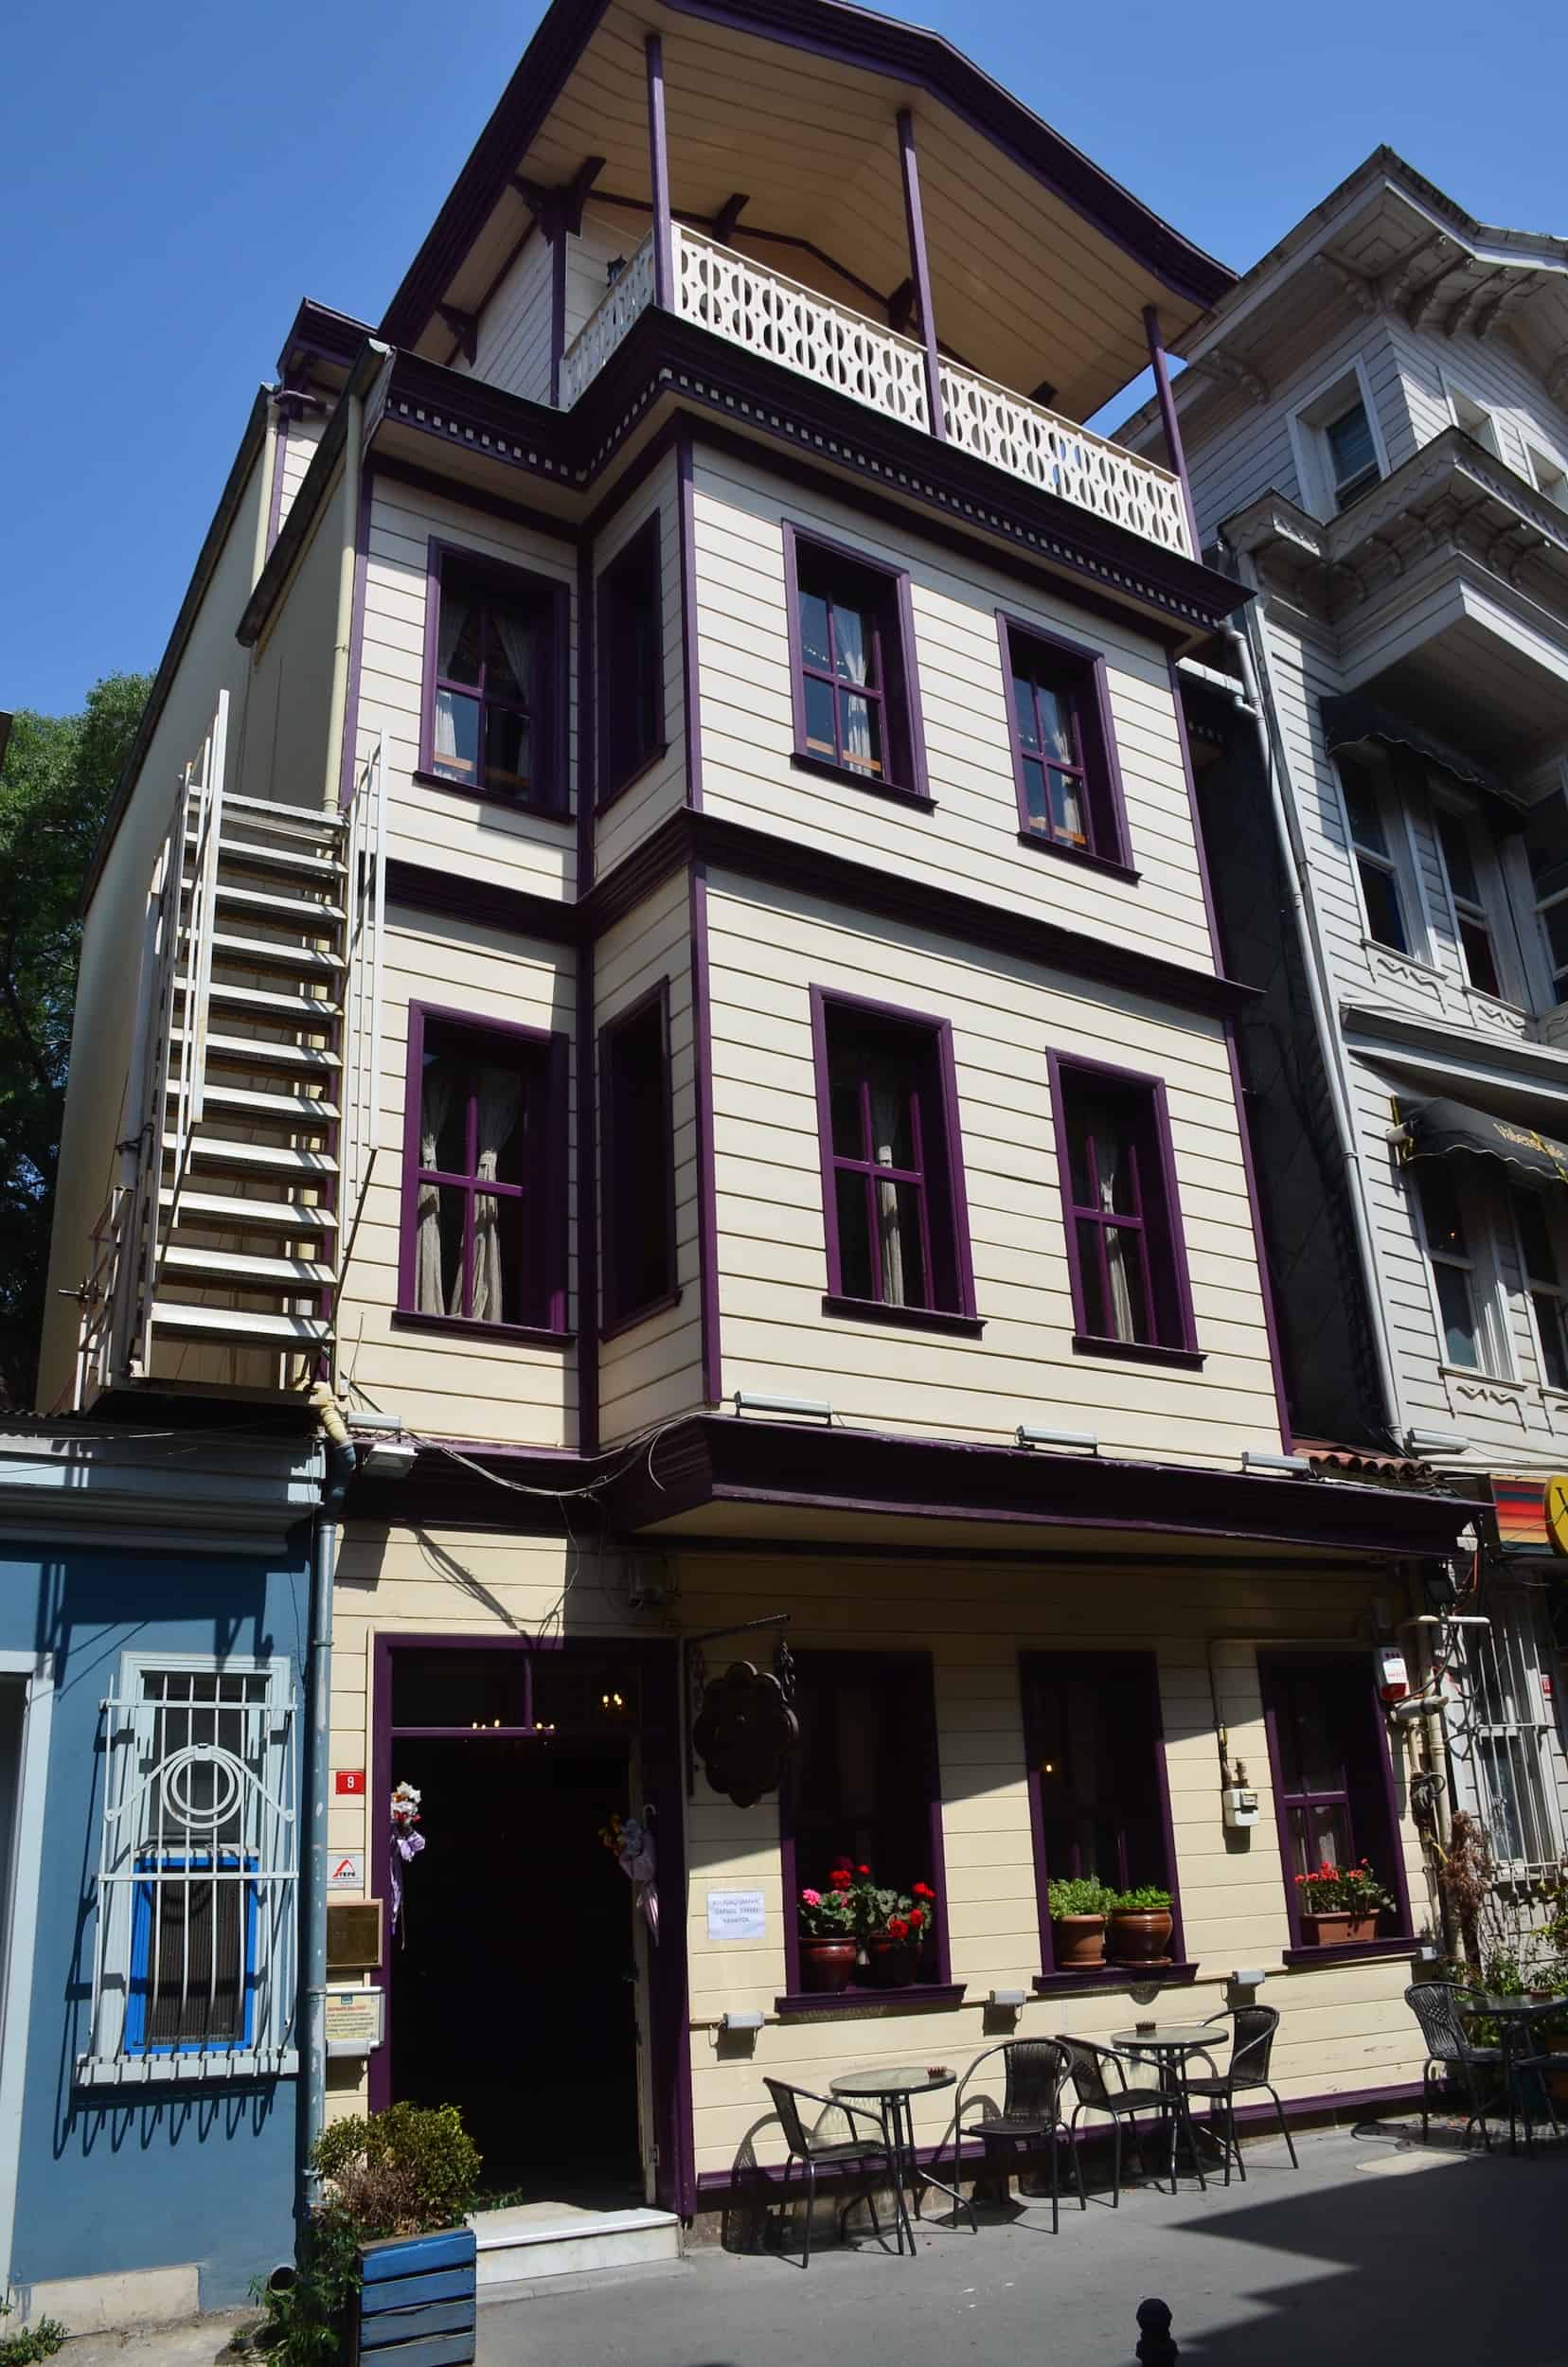 Süleymaniye Çikolatacısı in Şehzadebaşı, Fatih, Istanbul, Turkey